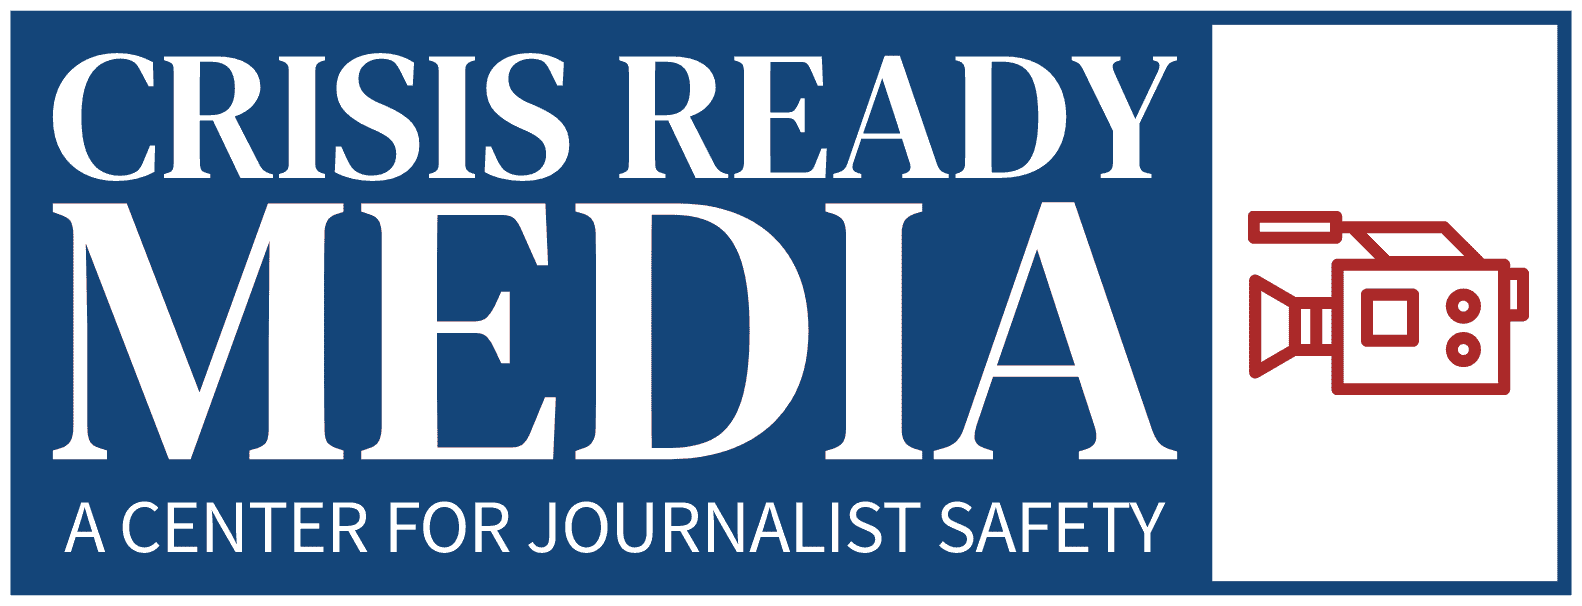 Crisis Ready Media